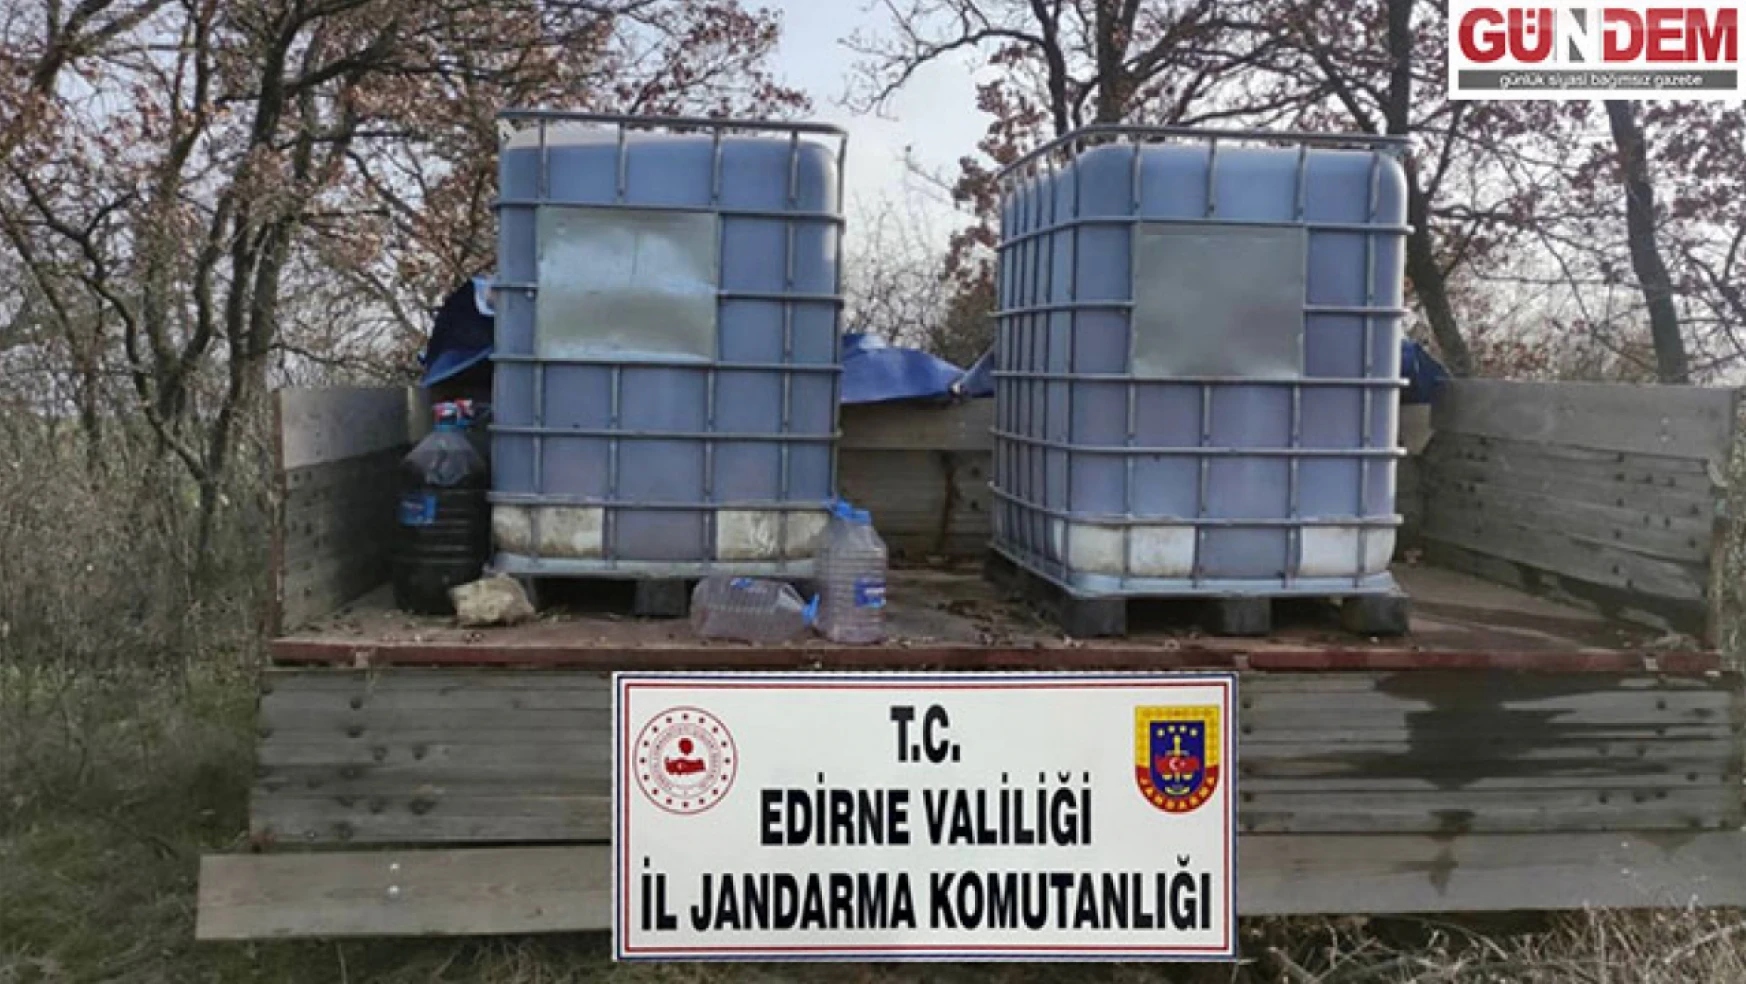 Edirne 'de 2 bin 200 litre kaçak içki ele geçirildi